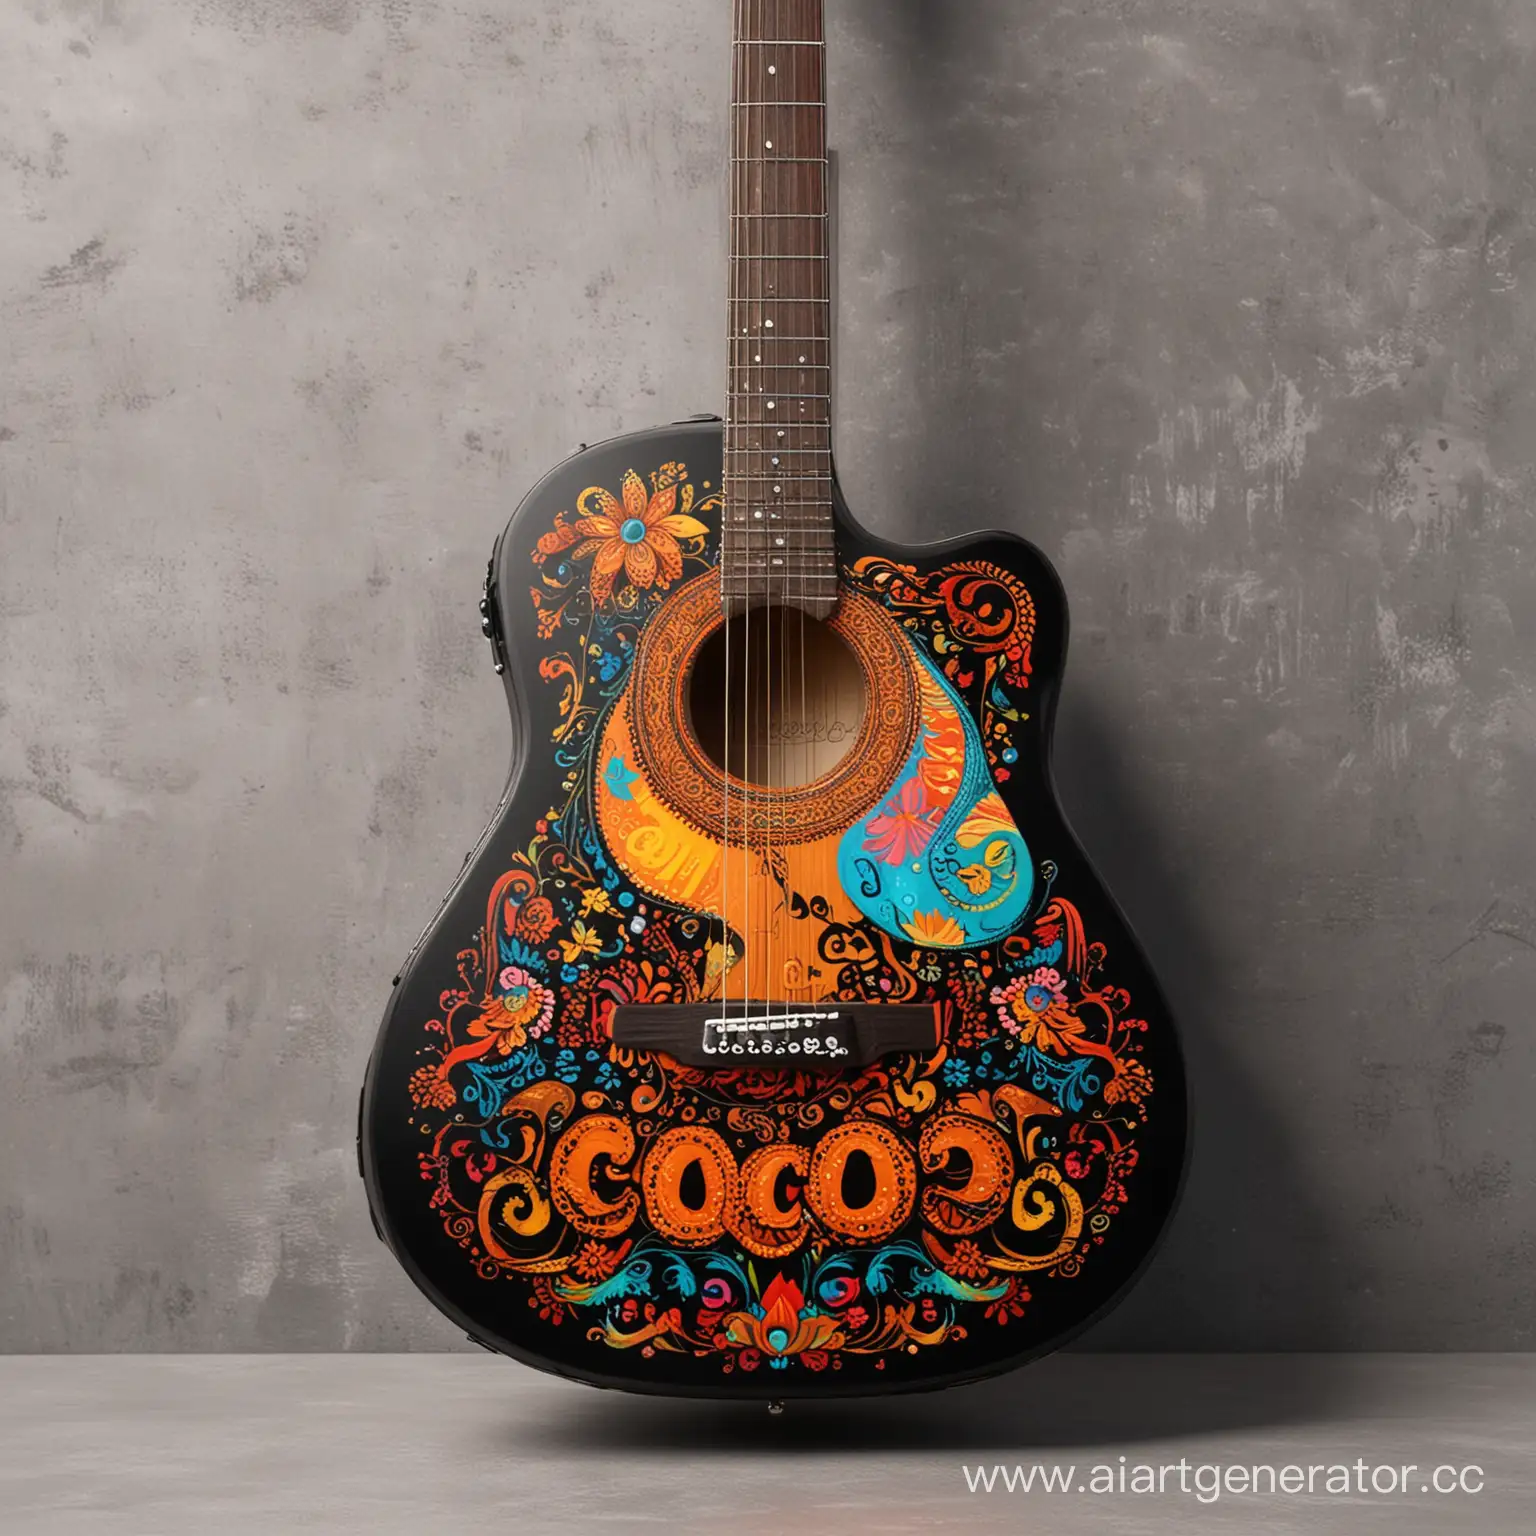 Акустическая гитара черного цвета с артом в стиле мультфильма тайна коко в ярких цветах